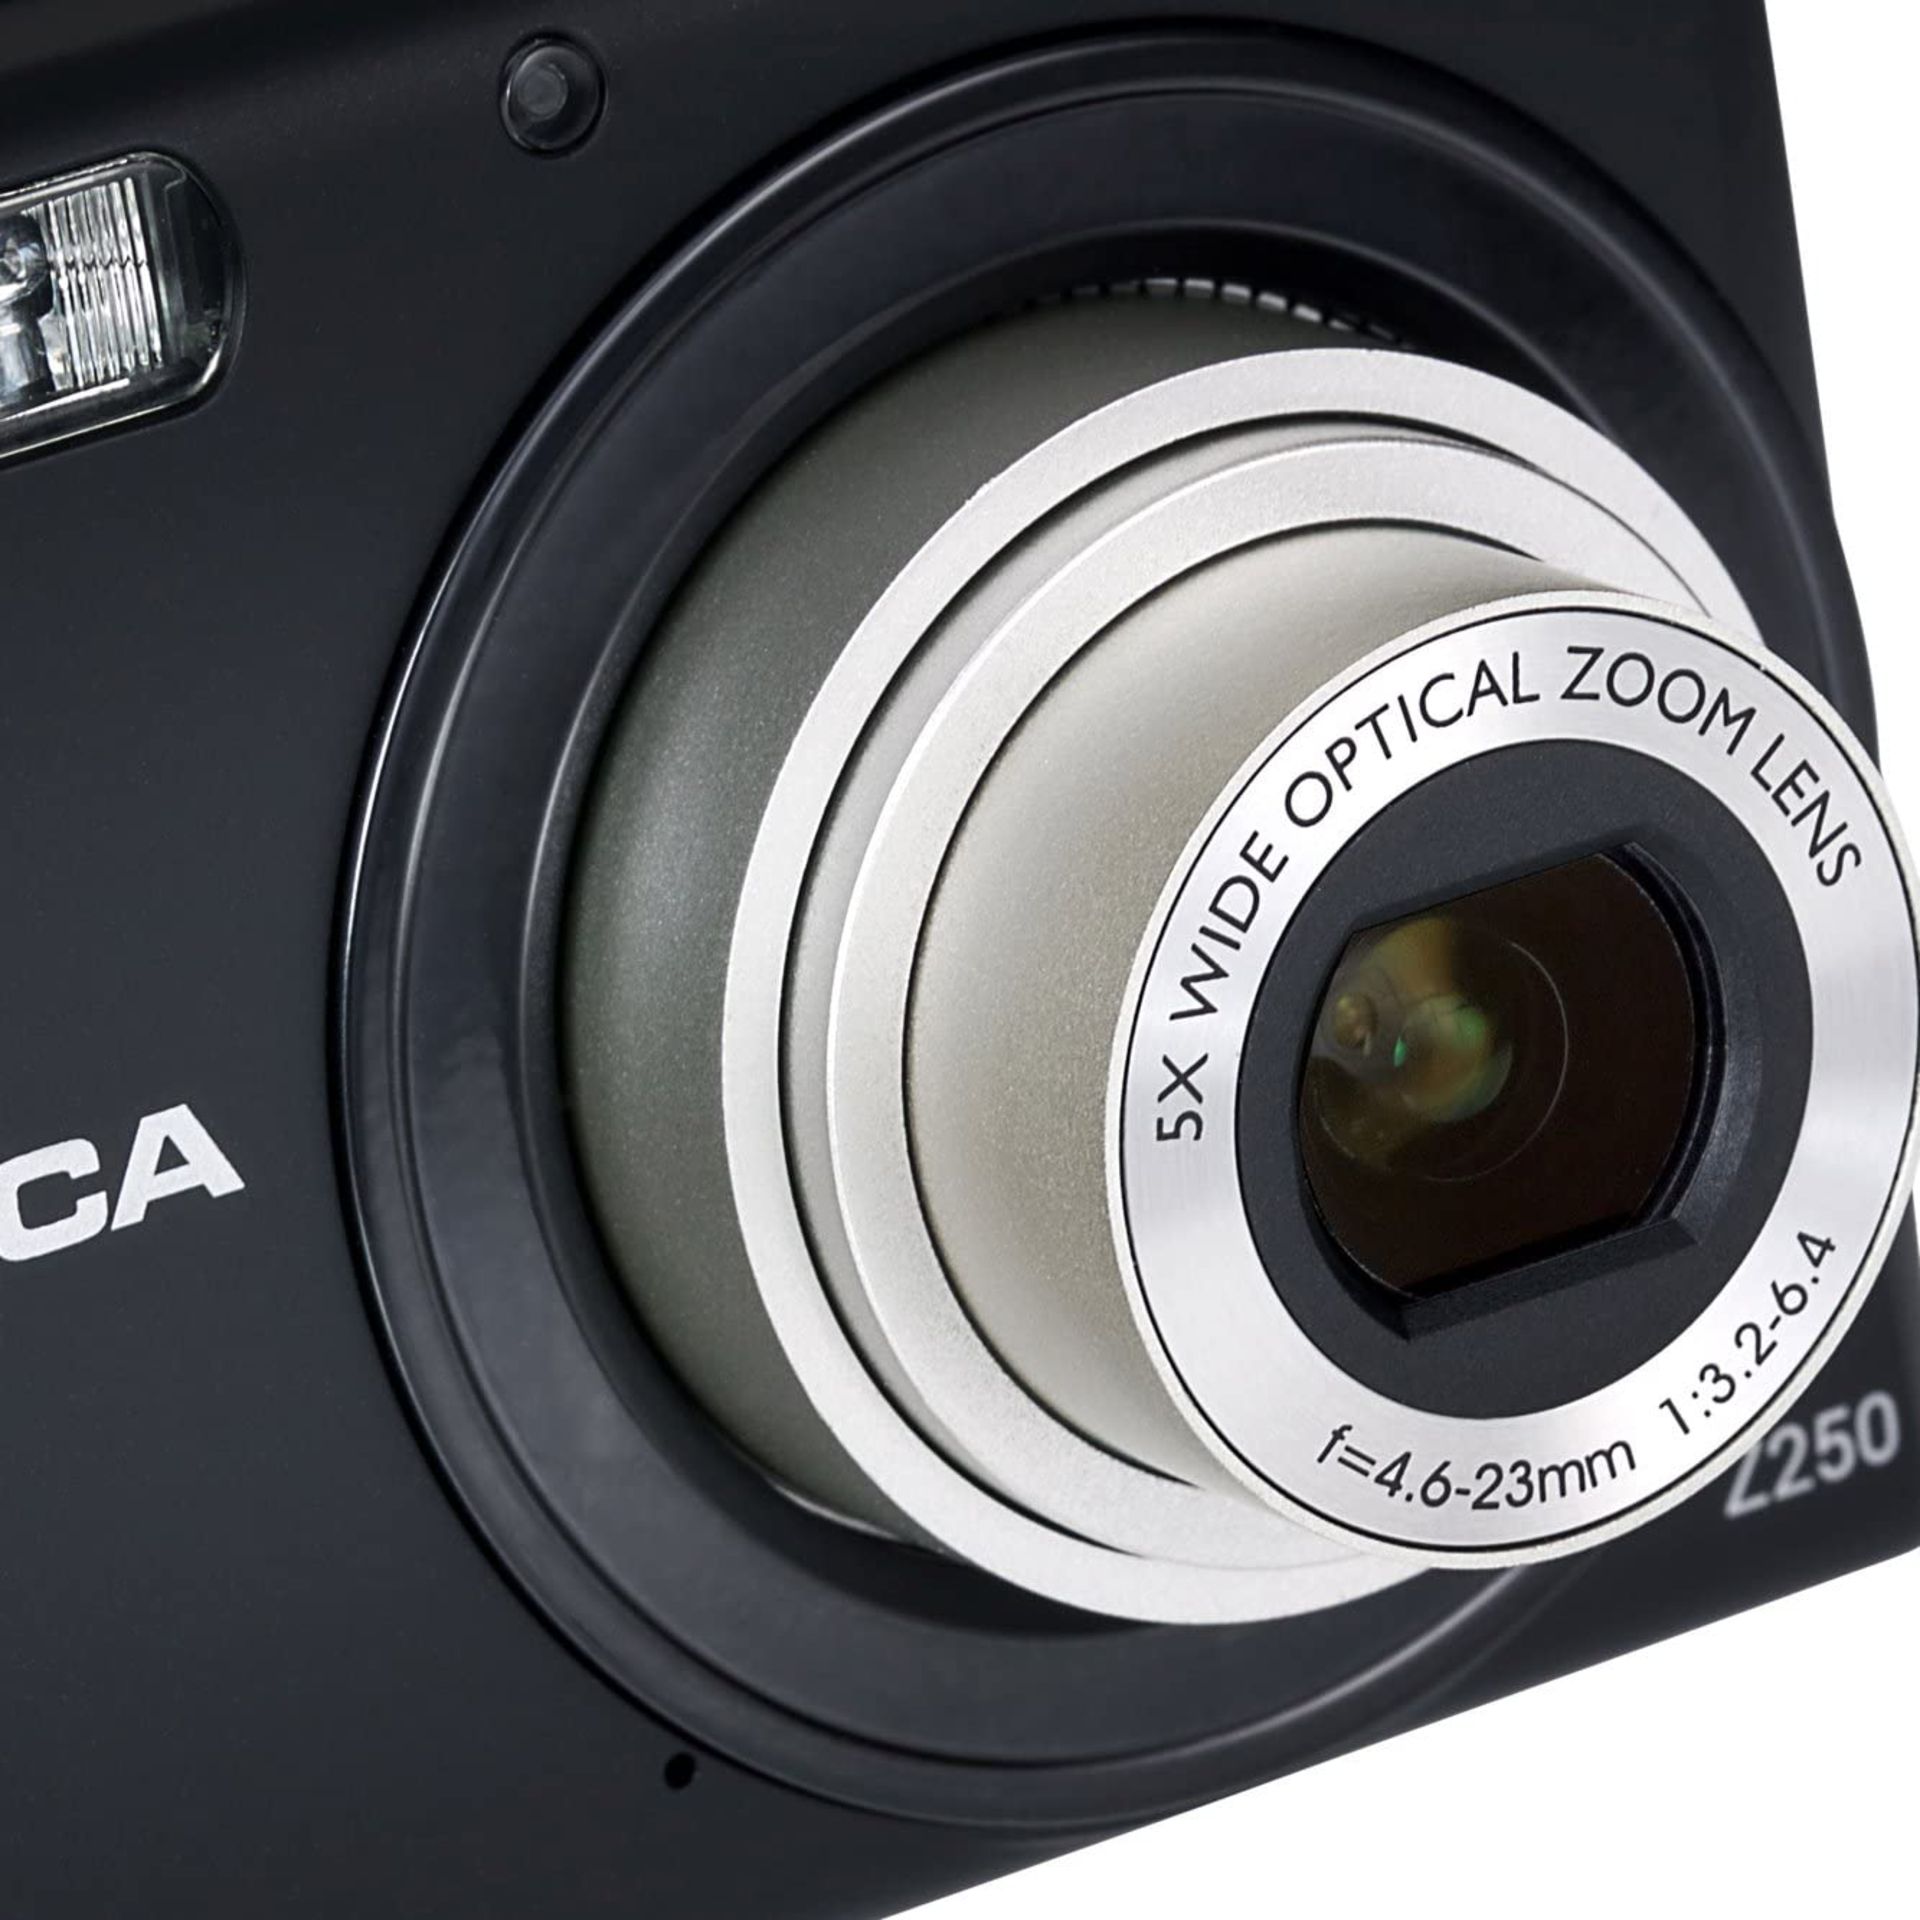 (45) 1 x Grade B - Praktica Luxmedia Z250 Digital Compact Camera - Black (20 MP,5x Optical Zoom... - Image 3 of 3